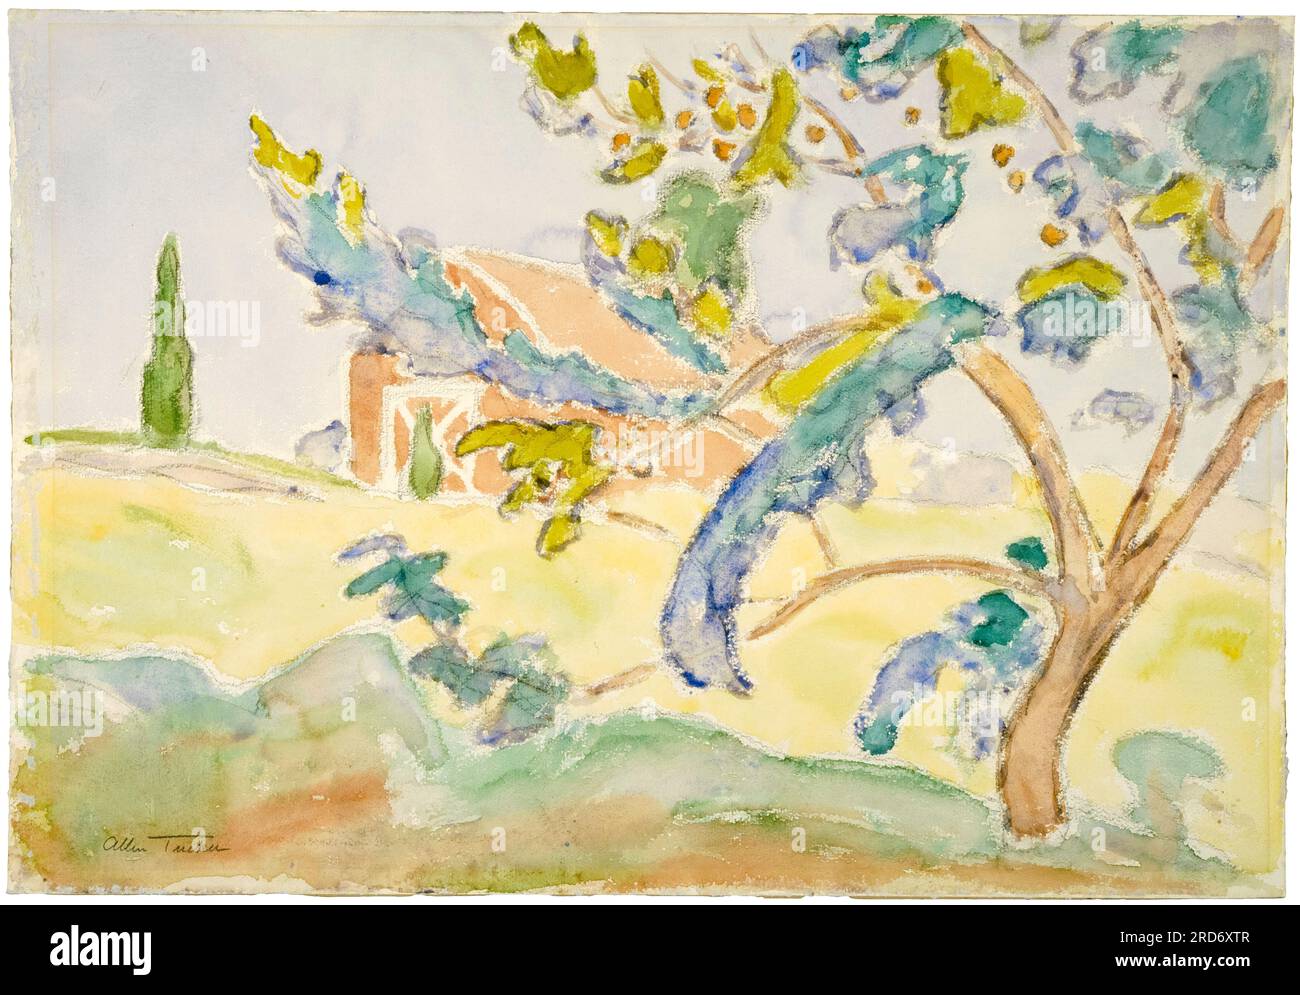 Allen Tucker, Tree and Barn, peinture de paysage à l'aquarelle, avant 1939 Banque D'Images